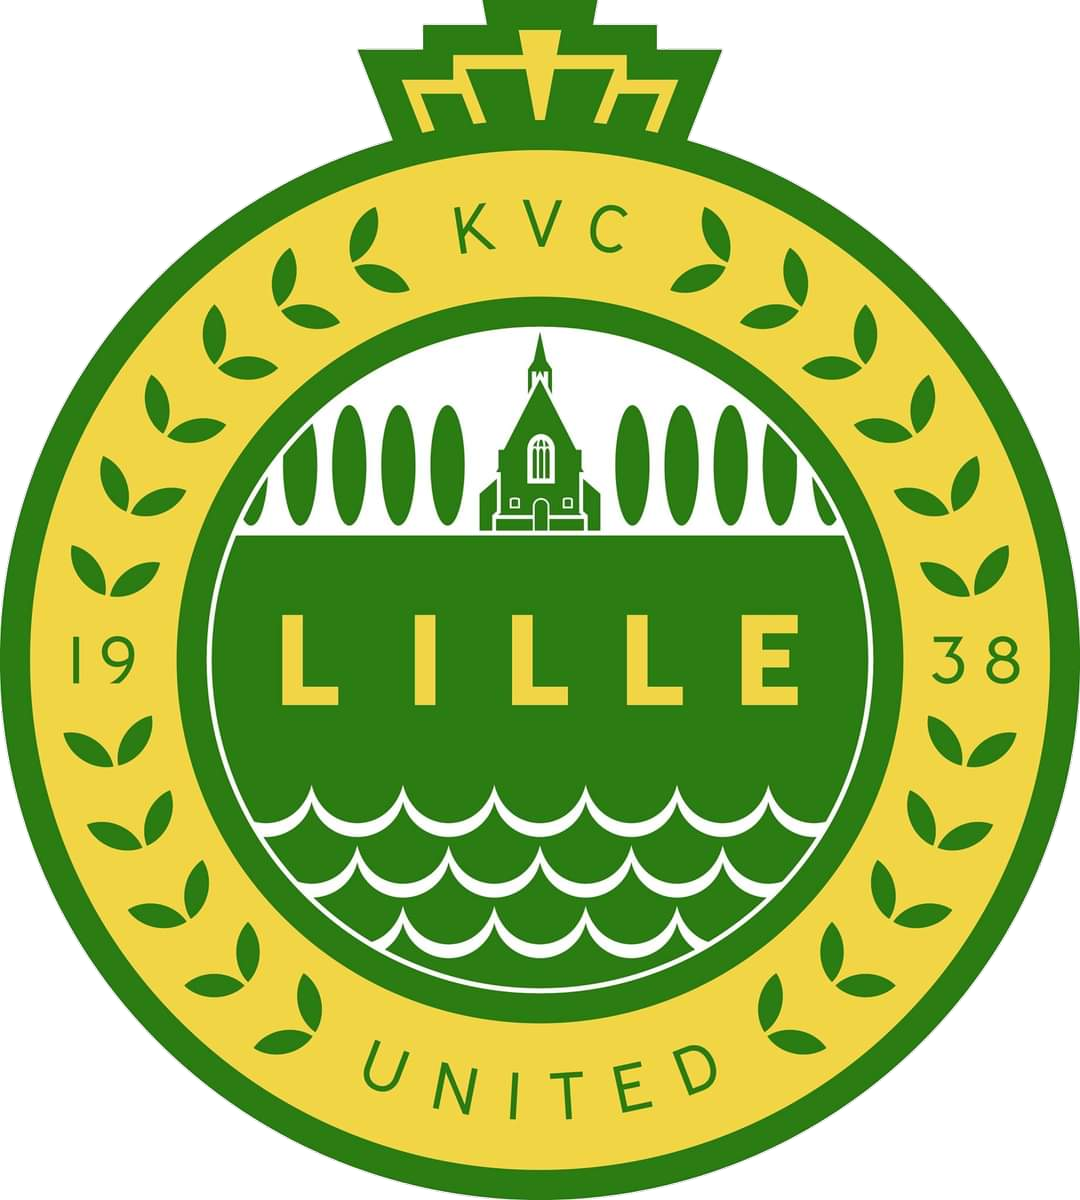 Wappen KVC Lille United diverse